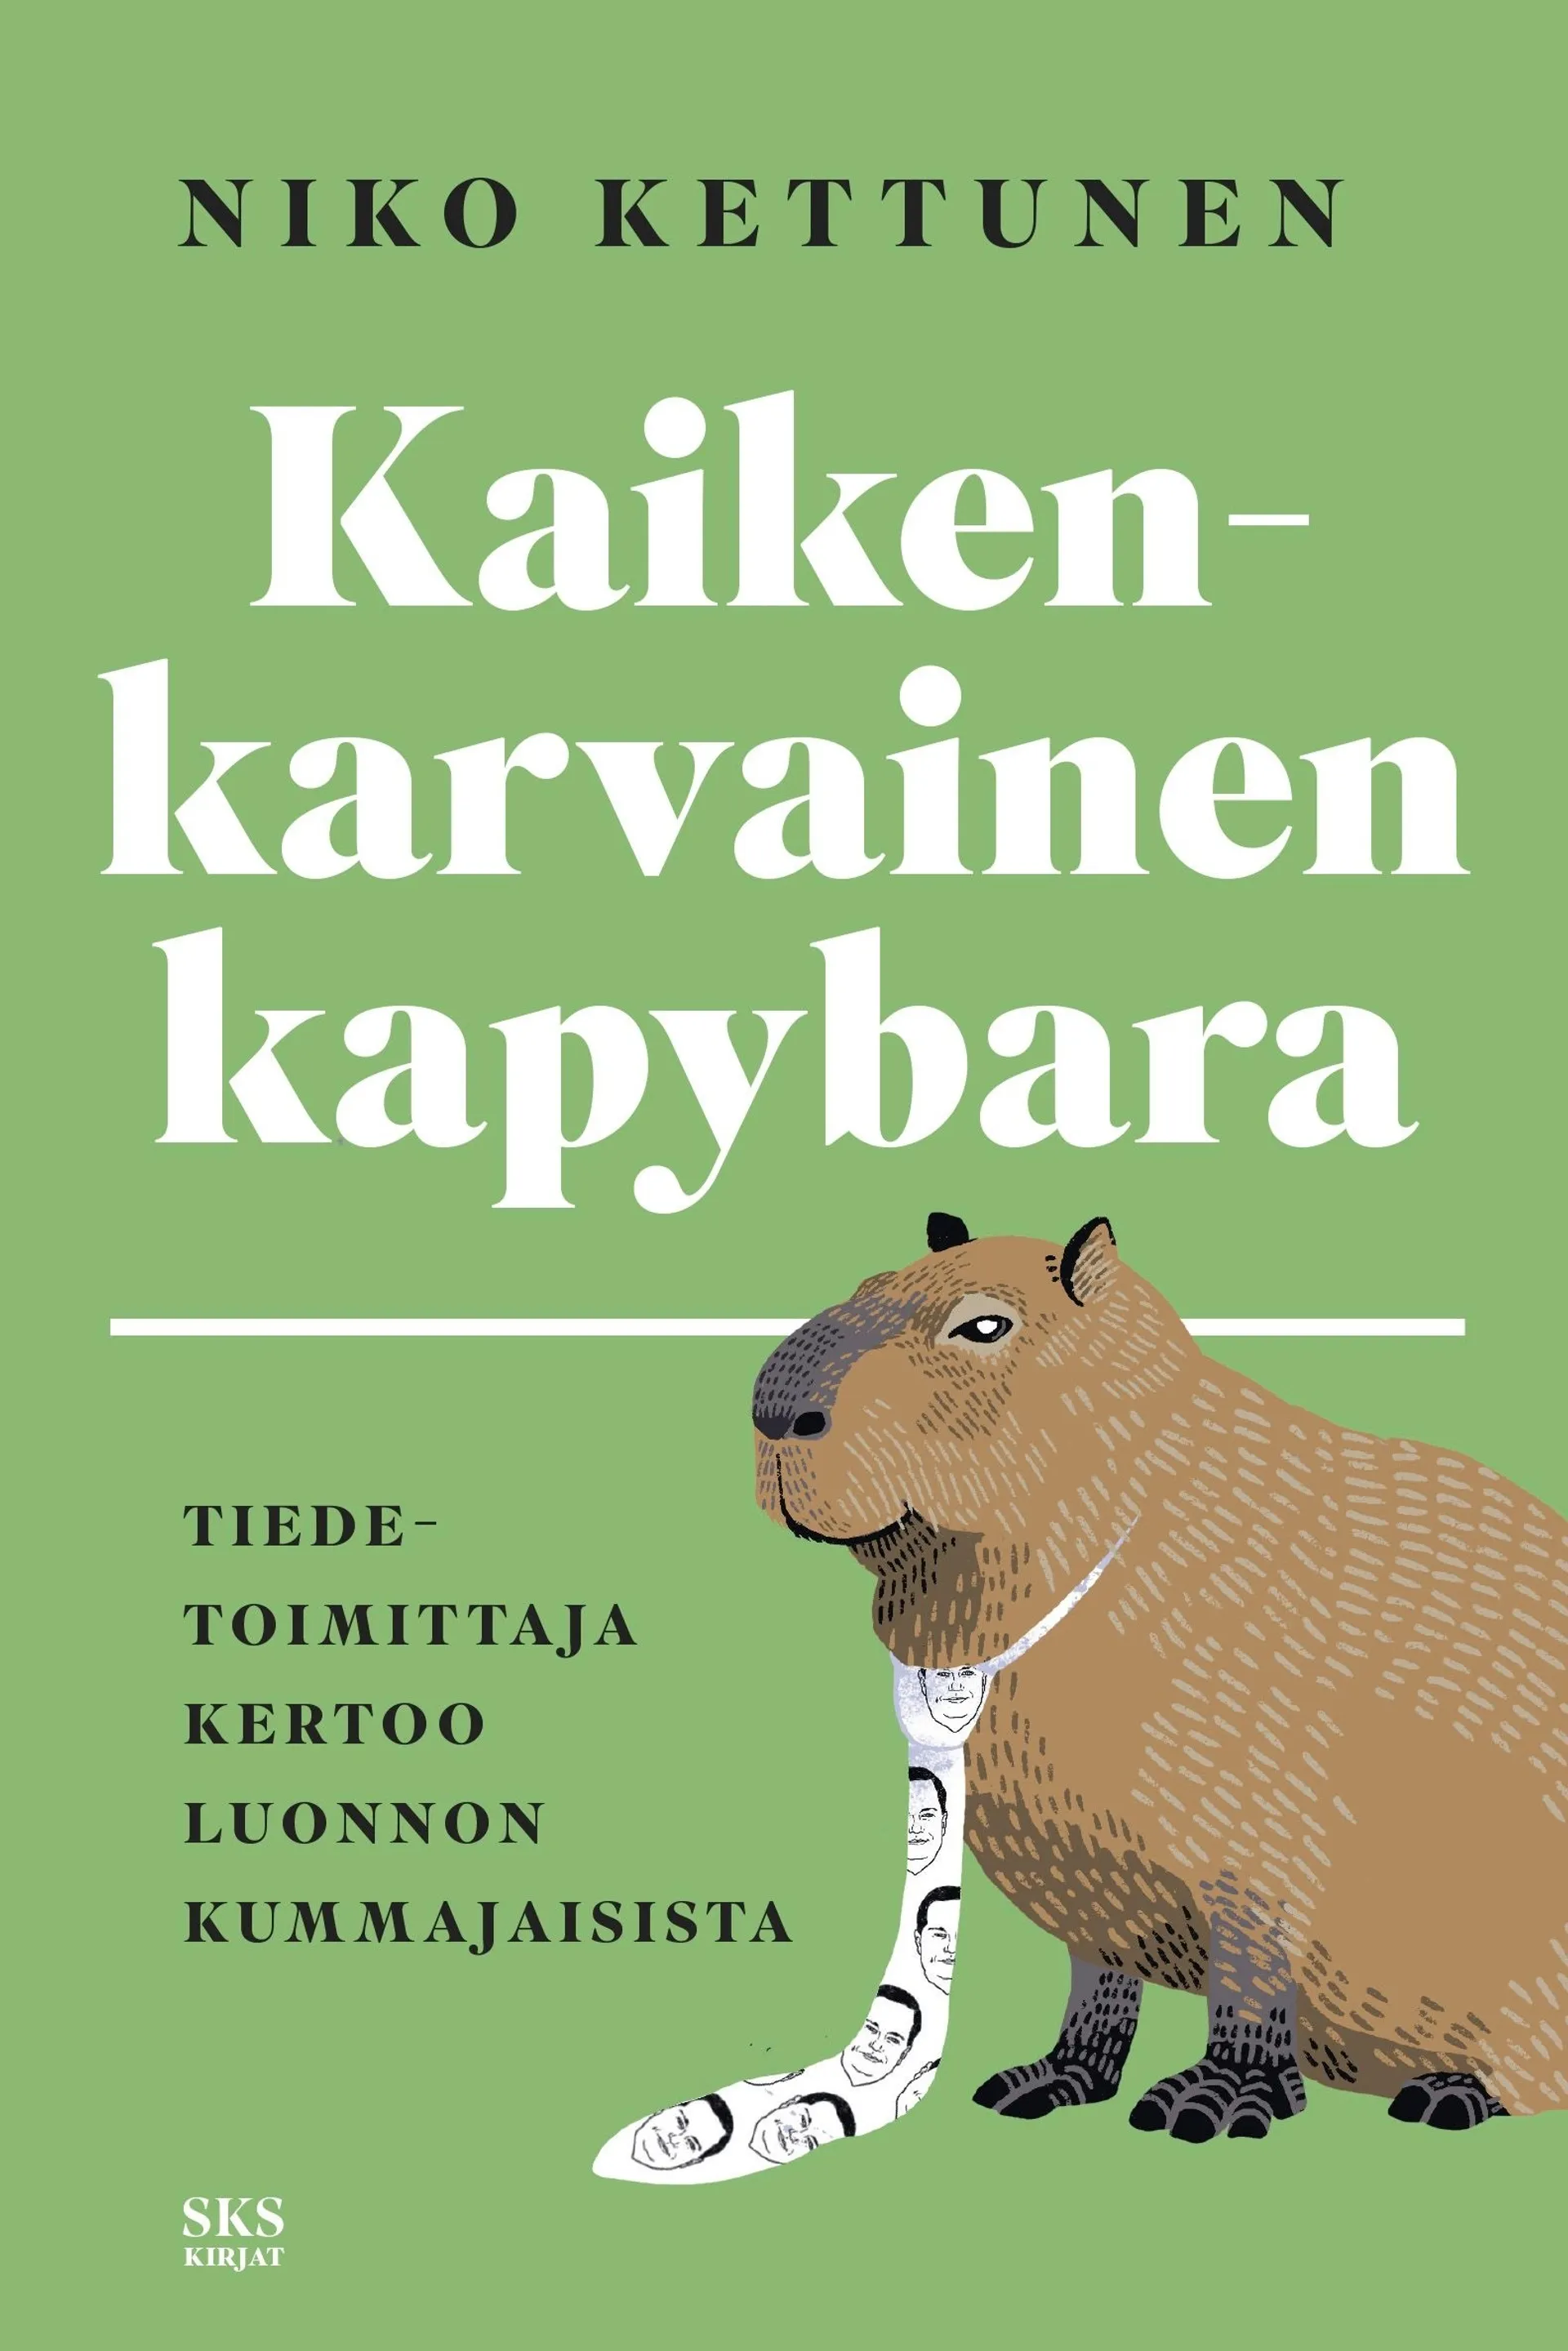 Kettunen, Kaikenkarvainen kapybara - Tiedetoimittaja kertoo luonnon kummajaisista